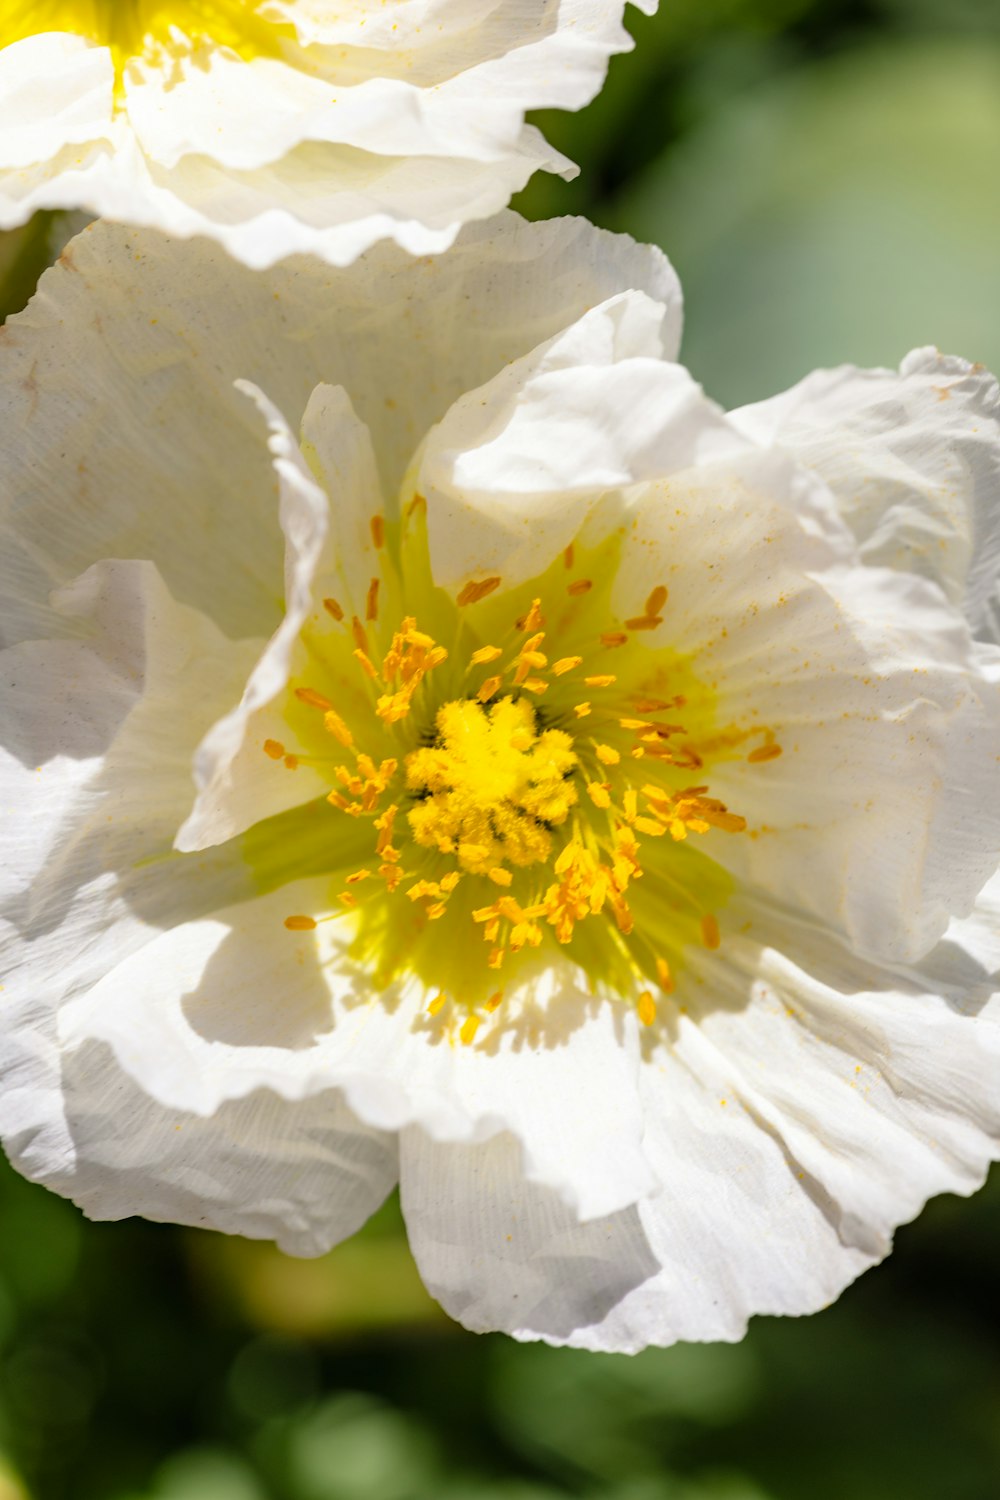 un primo piano di un fiore bianco con un centro giallo